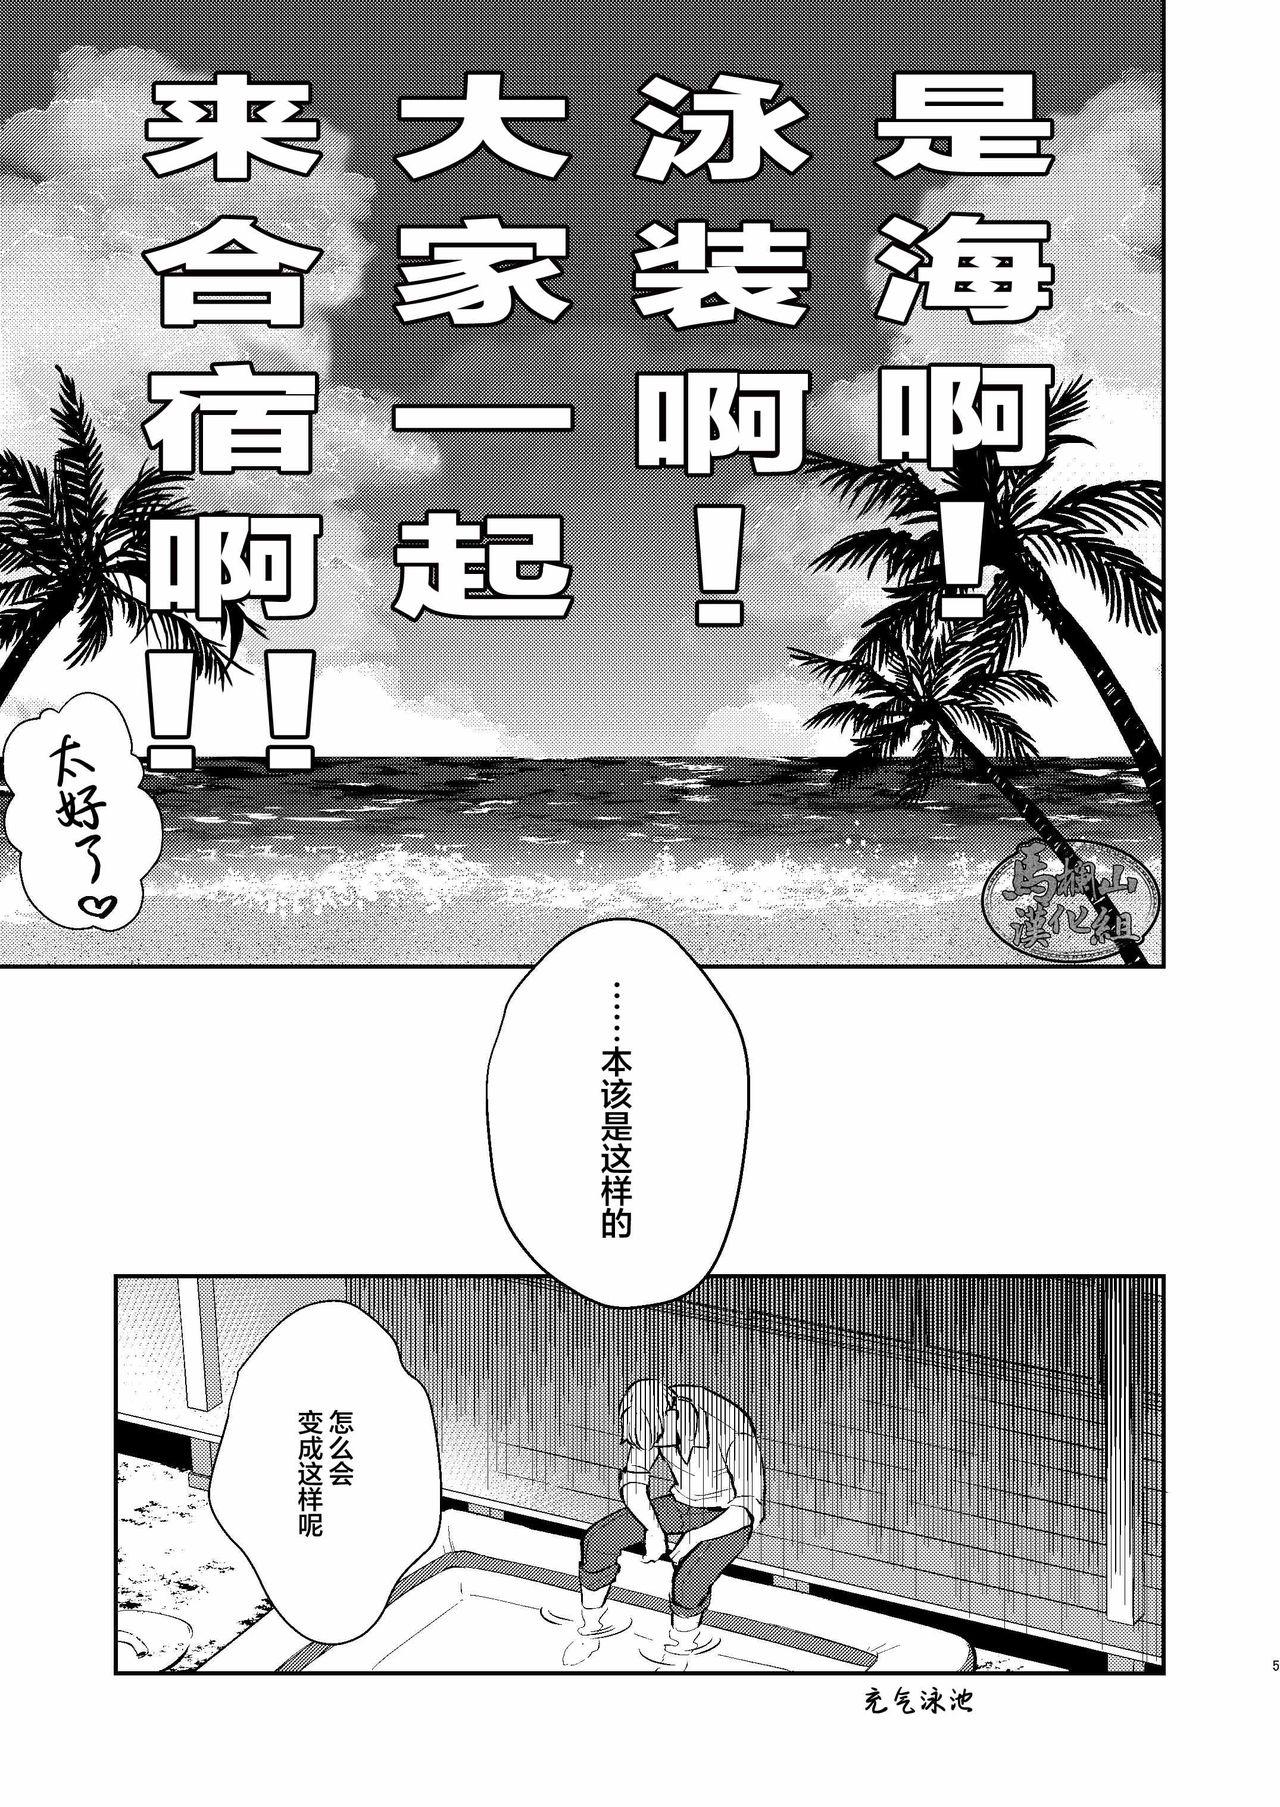 Two Manatsubi Honmaru ni Futarikkiri!? - Two people at the base in midsummer!? - Touken ranbu High Definition - Page 5